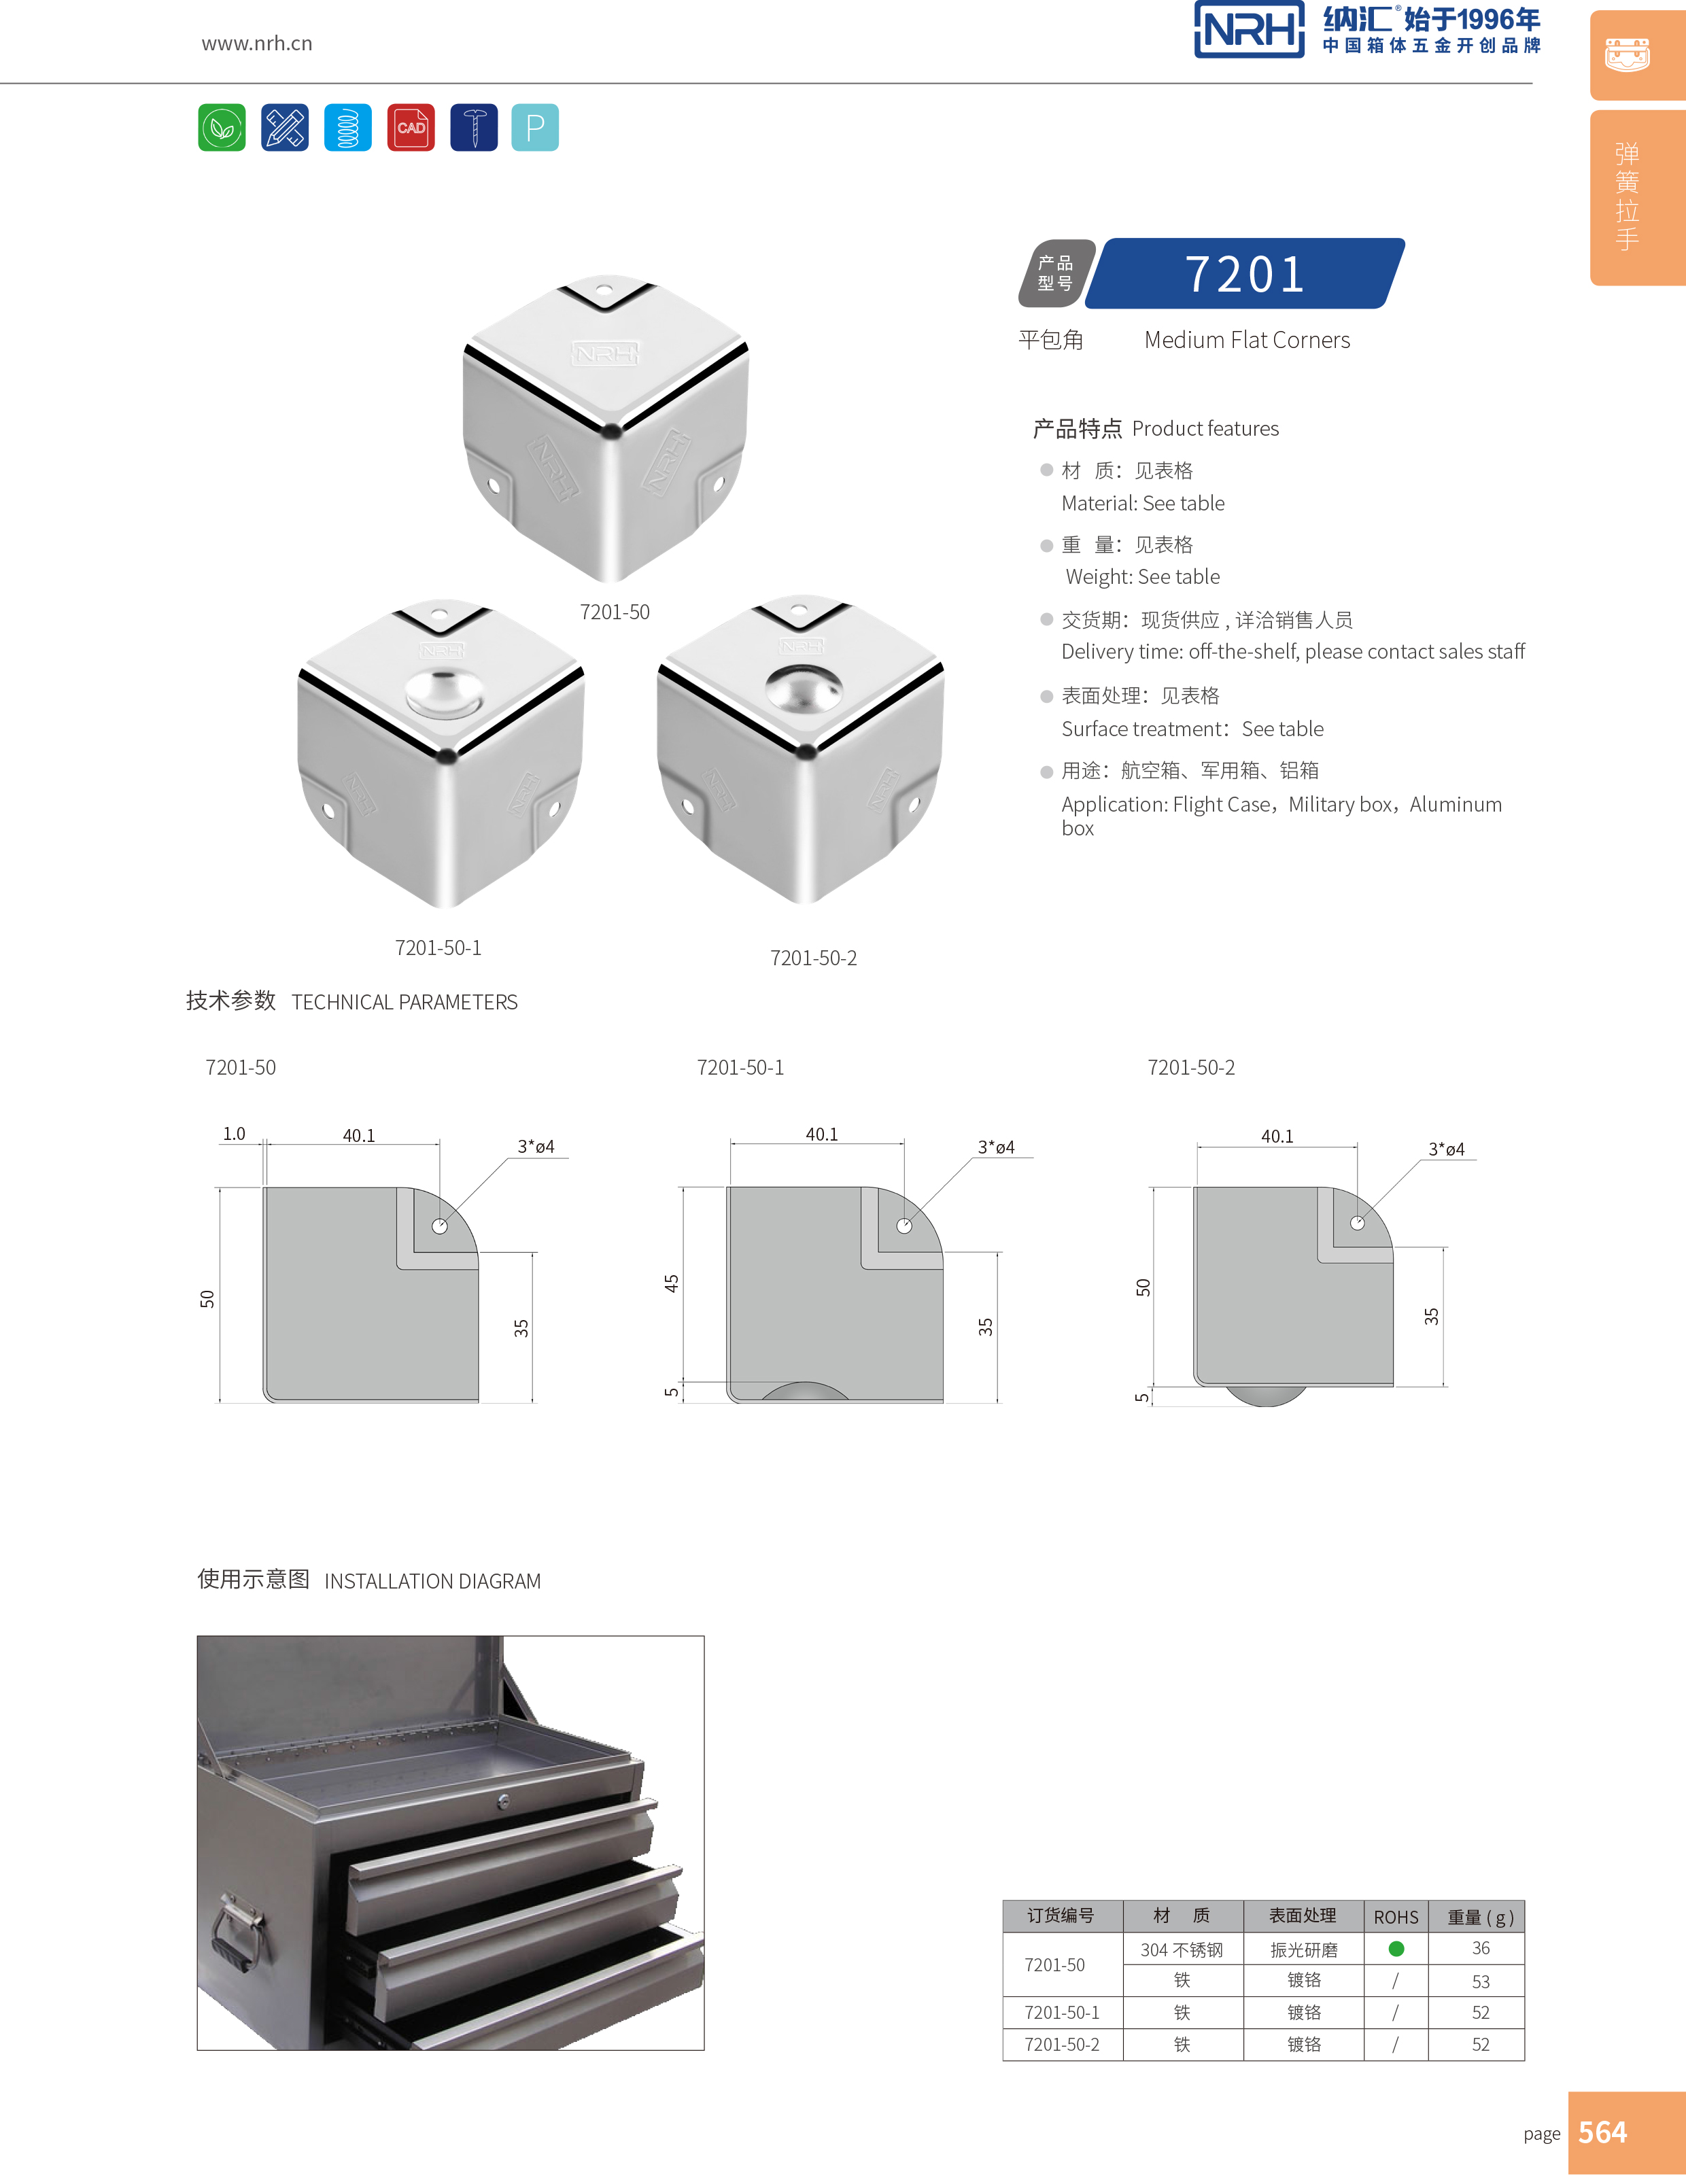 铝箱包角7201-50-1木箱铁皮护角_箱体护角_NRH纳汇铝箱包角